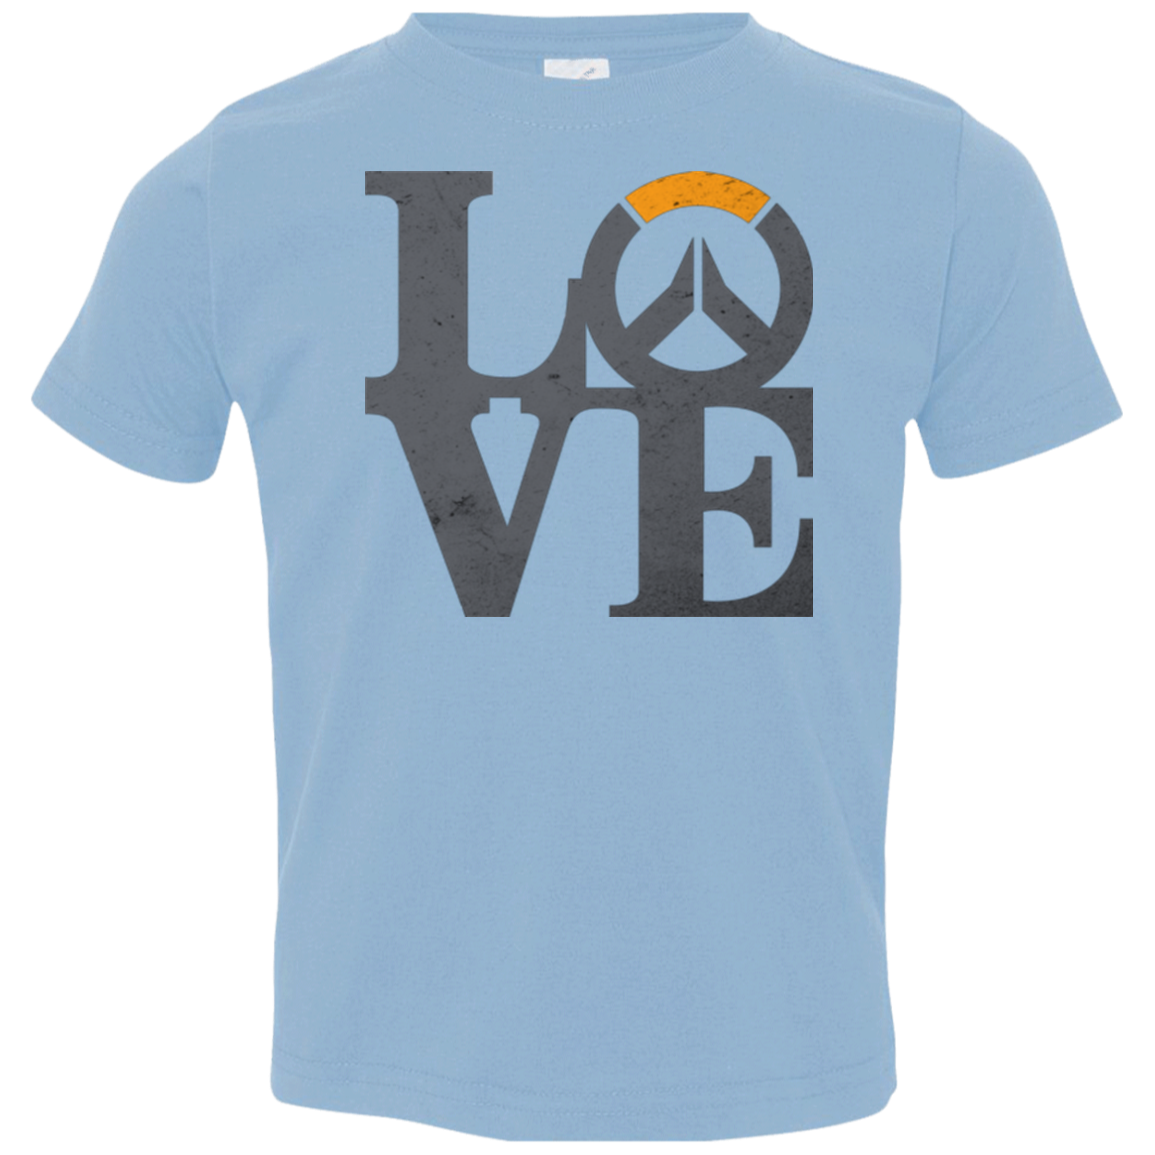 Loverwatch Toddler Premium T-Shirt